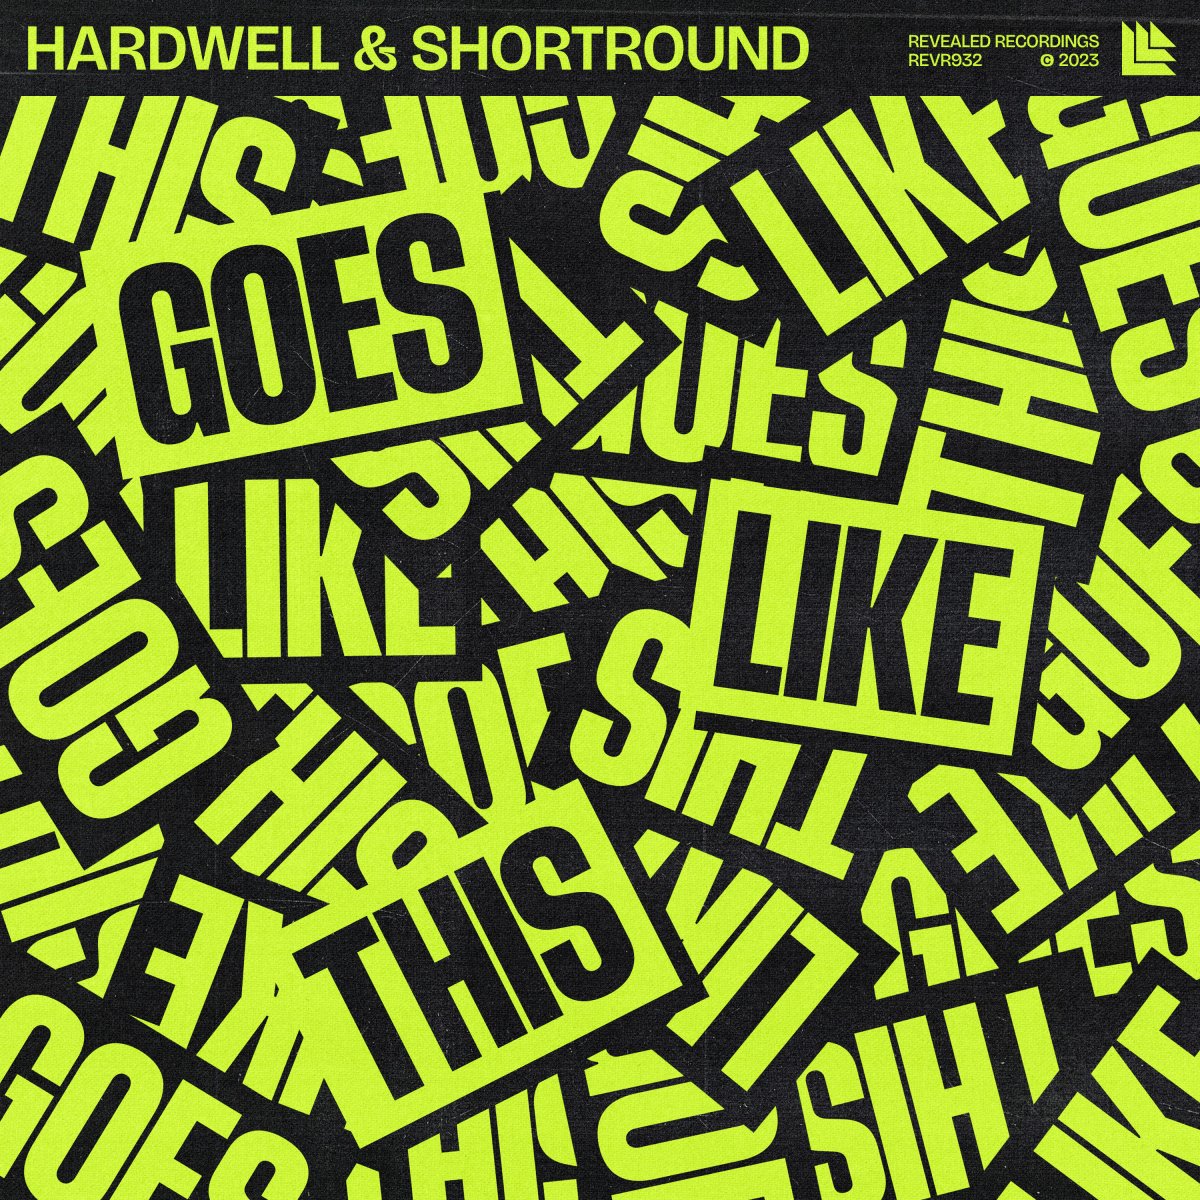 Goes Like This – Hardwell & Shortround